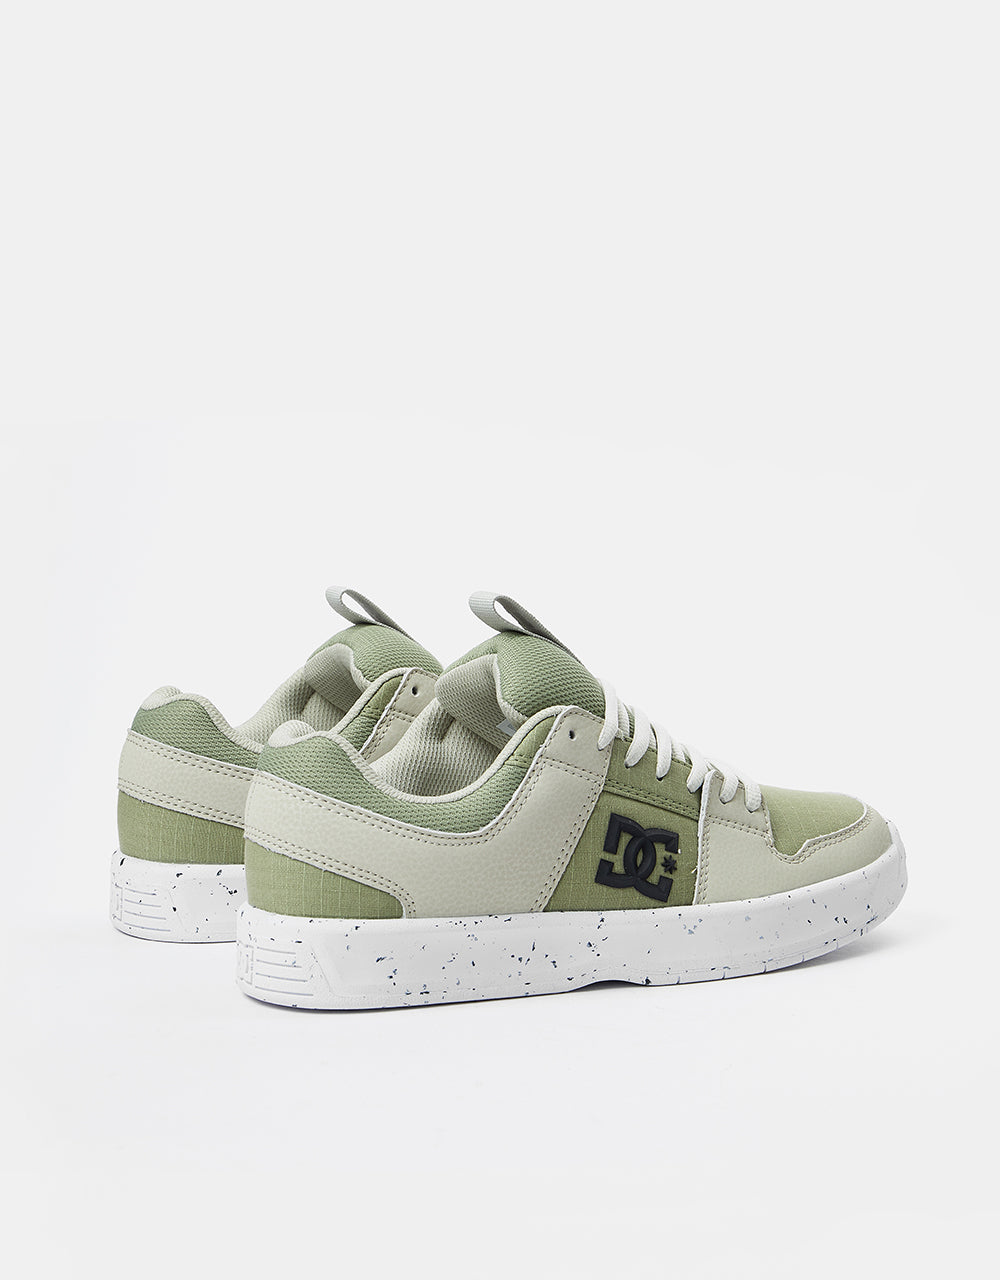 DC Lynx ZERO WASTE Skate Shoes - Tan/Green